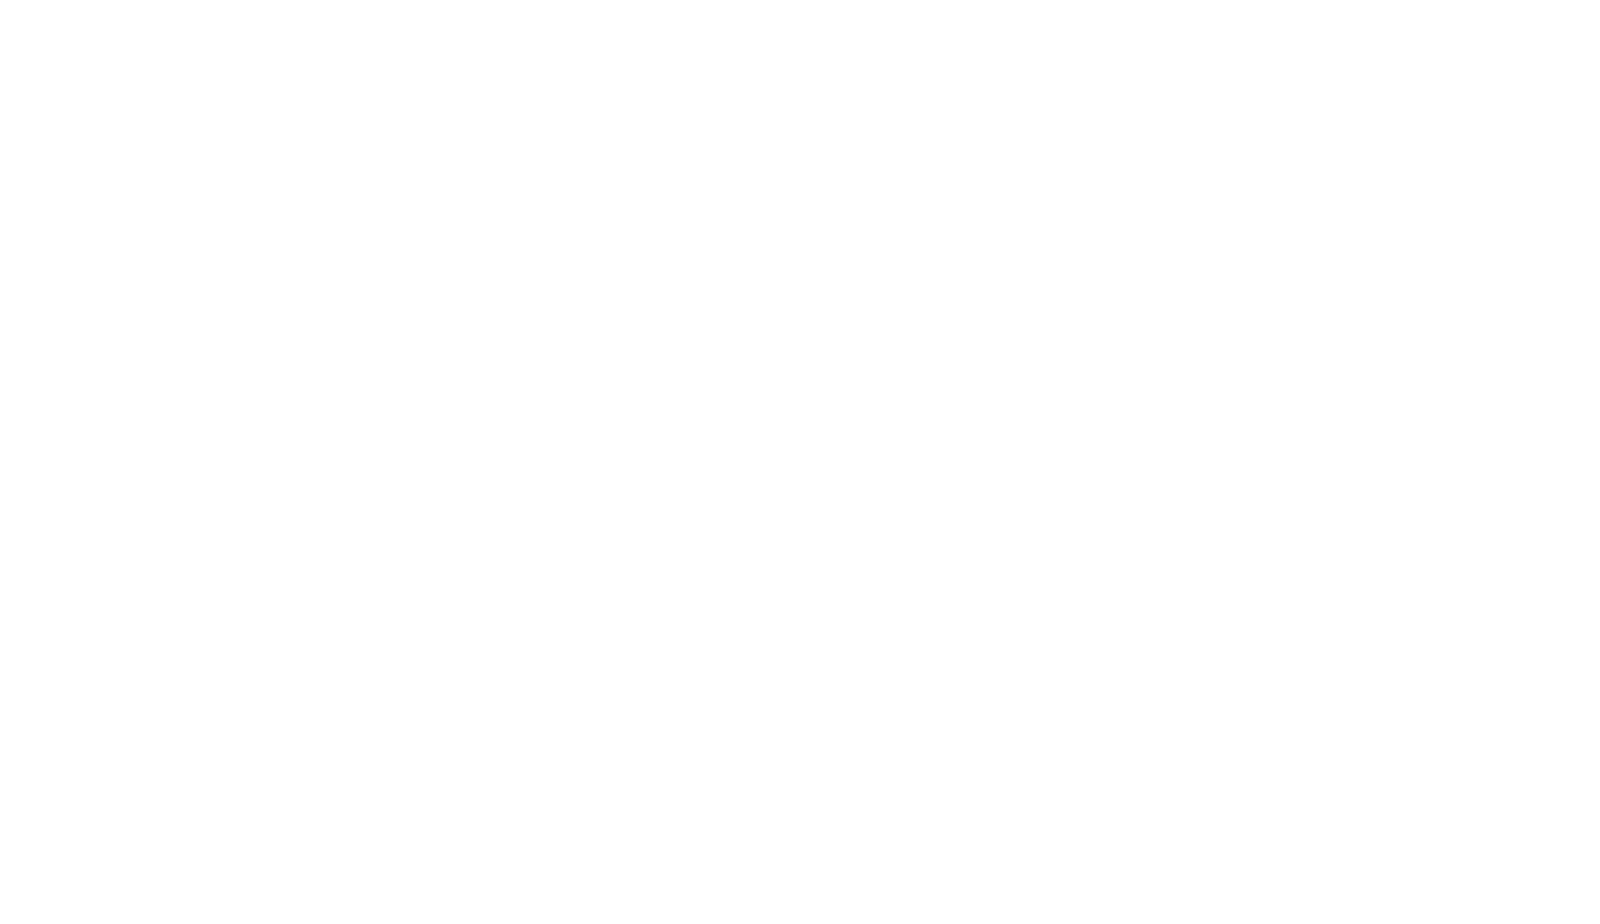 セレーナ・ゴメス、トレヴァー・ダニエルとのコラボ曲を発表＆リリック・ビデオ公開サムネイル画像!